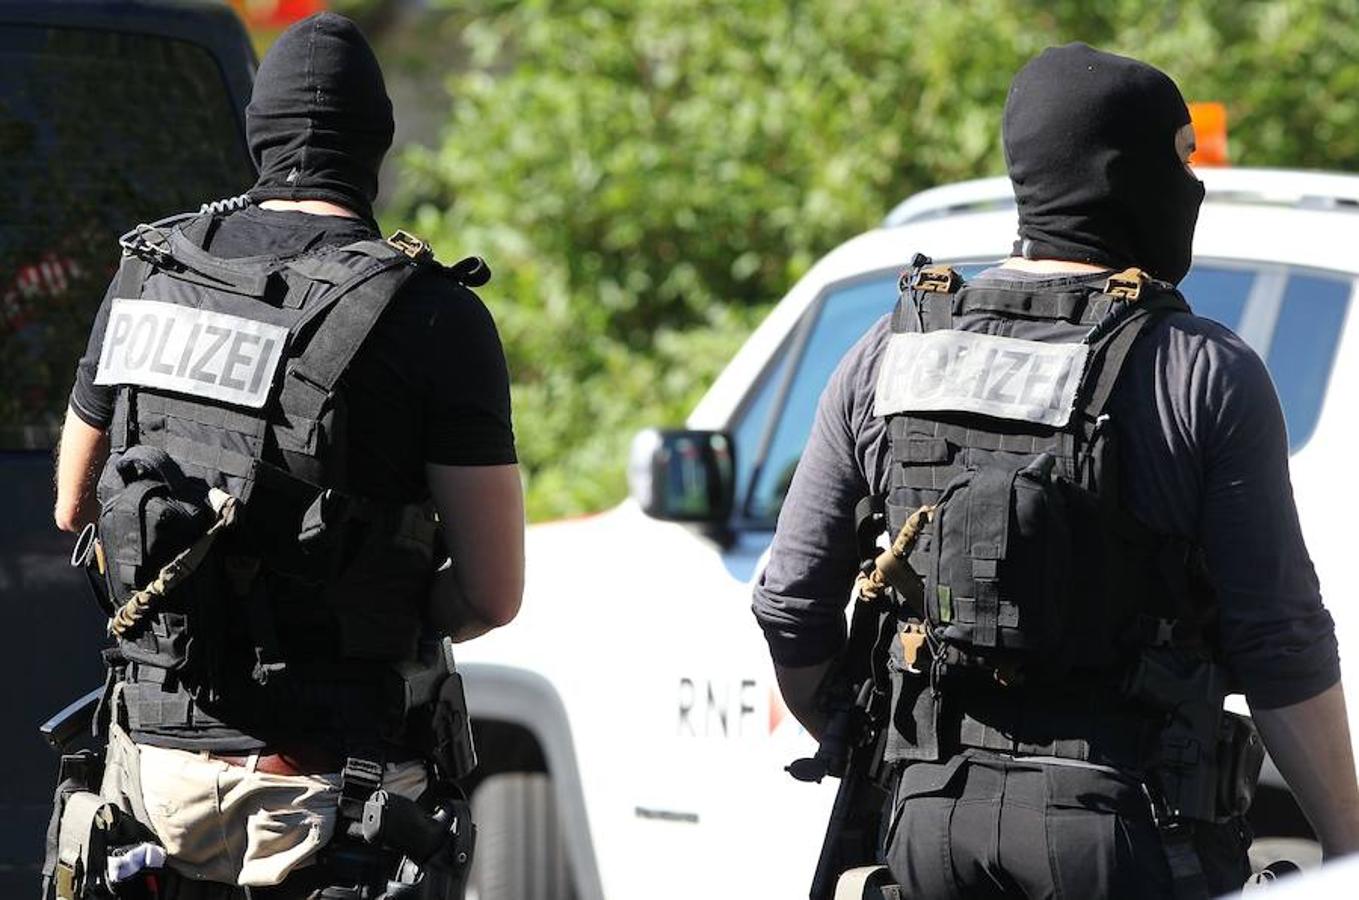 El asaltante efectuo al parecer cuatro disparos, según medios alemanes. AFP